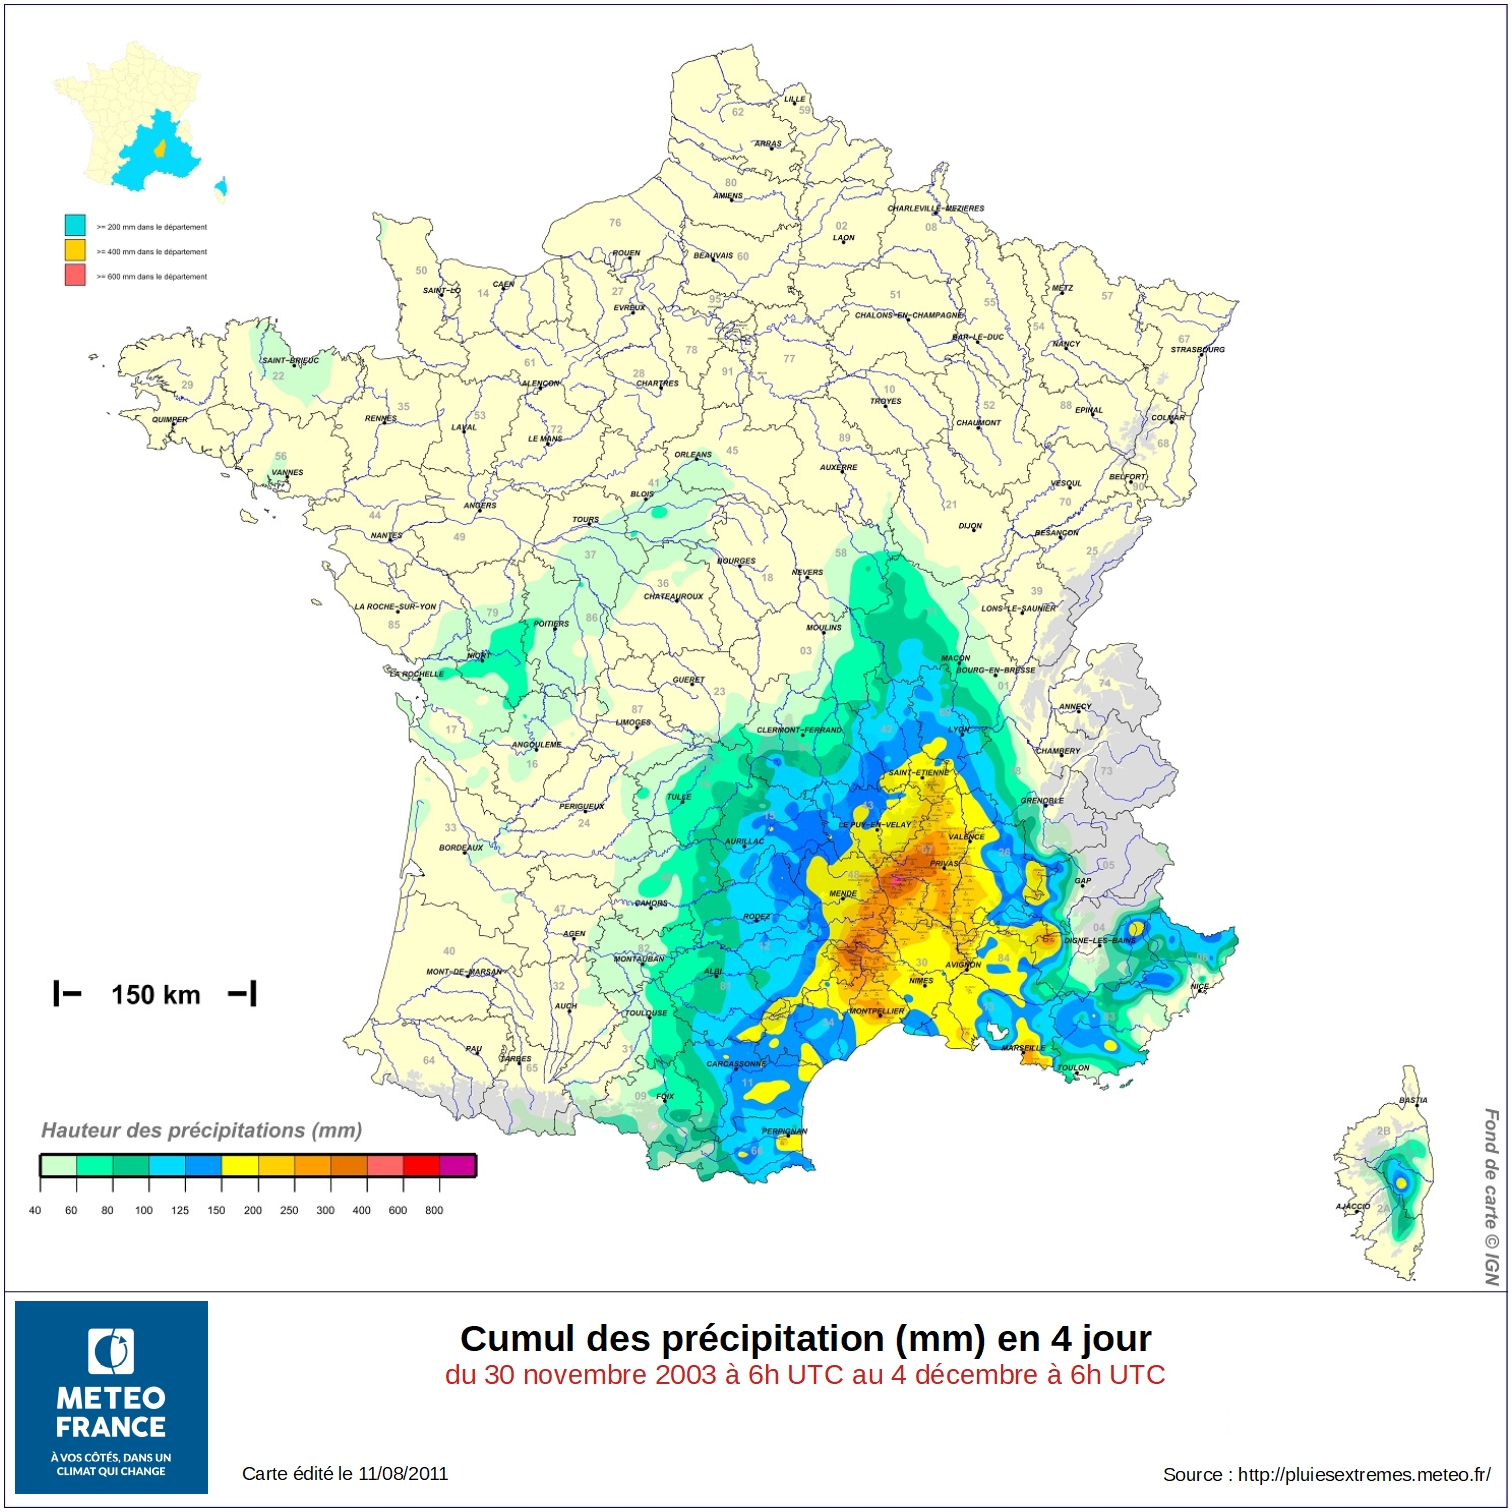 Carte Météo-France des cumuls de précipitation entre le 30 novembre et le 4 décembre 2003